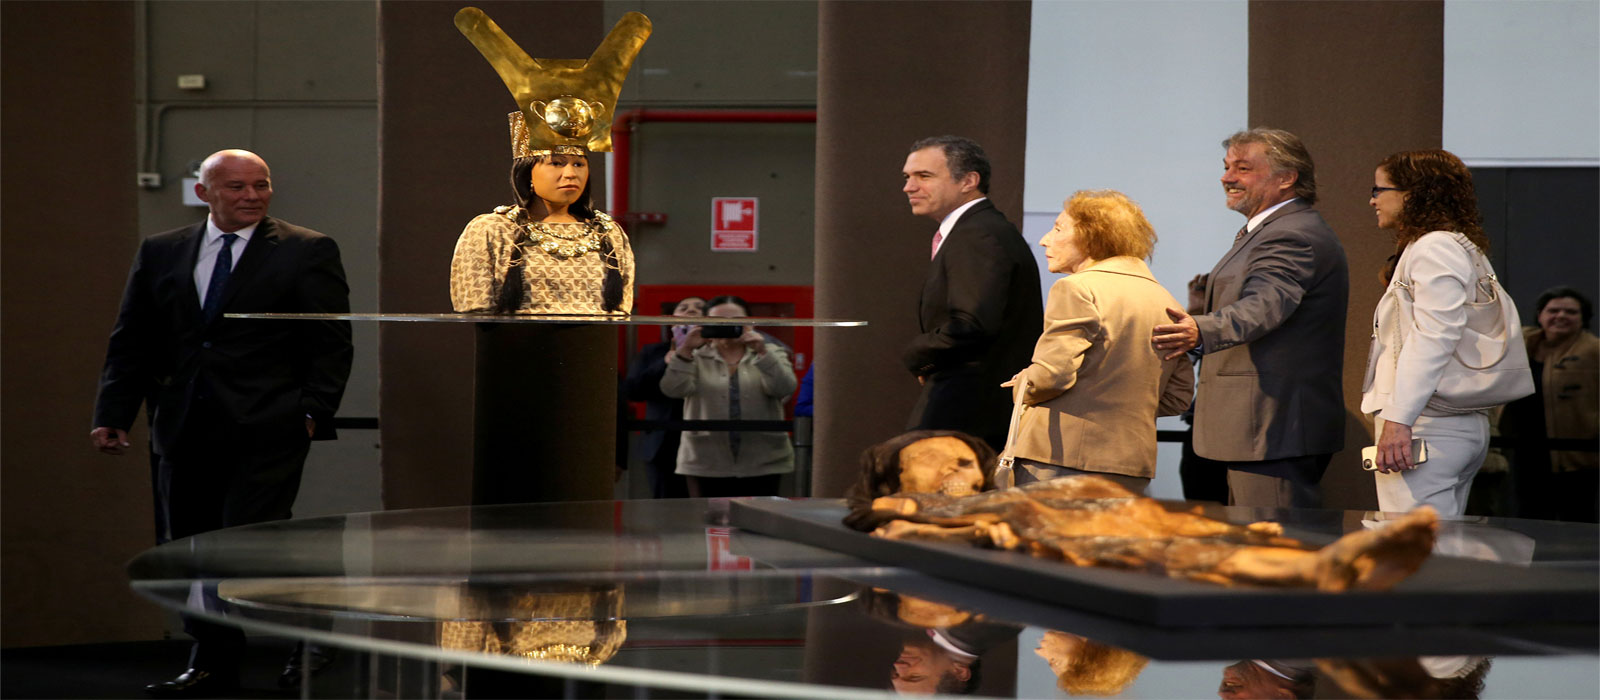 Peru reveals replica of face of ancient female ruler